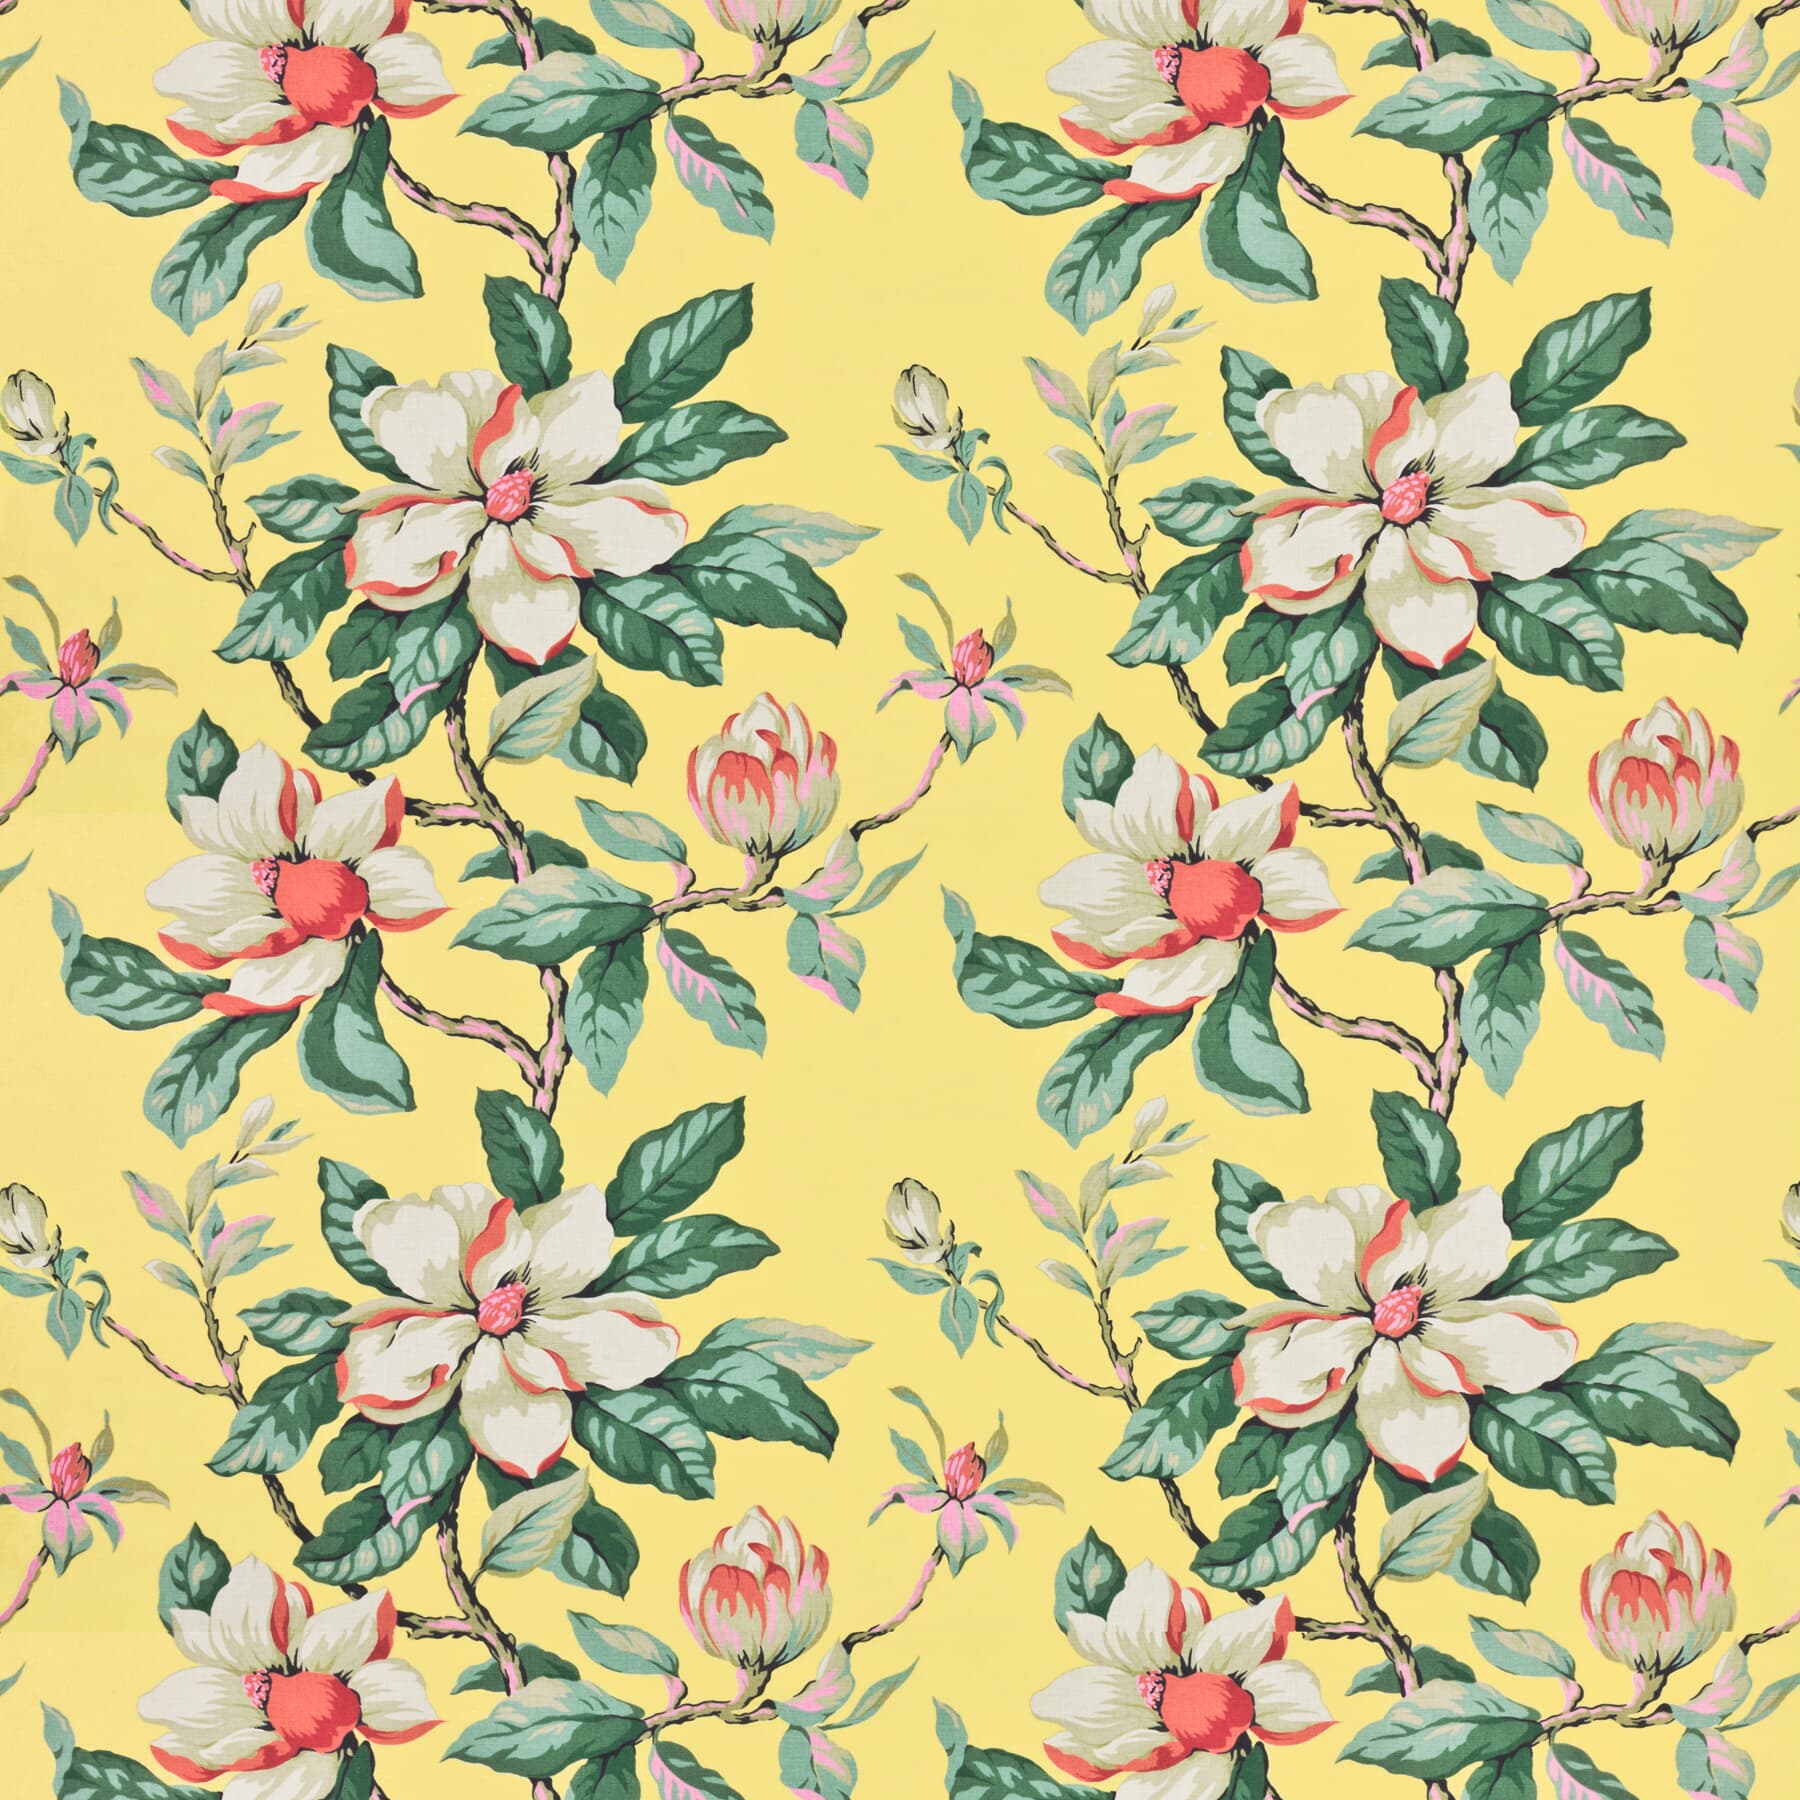 7460-9 Magnolia Grandiflora by Stout Fabric